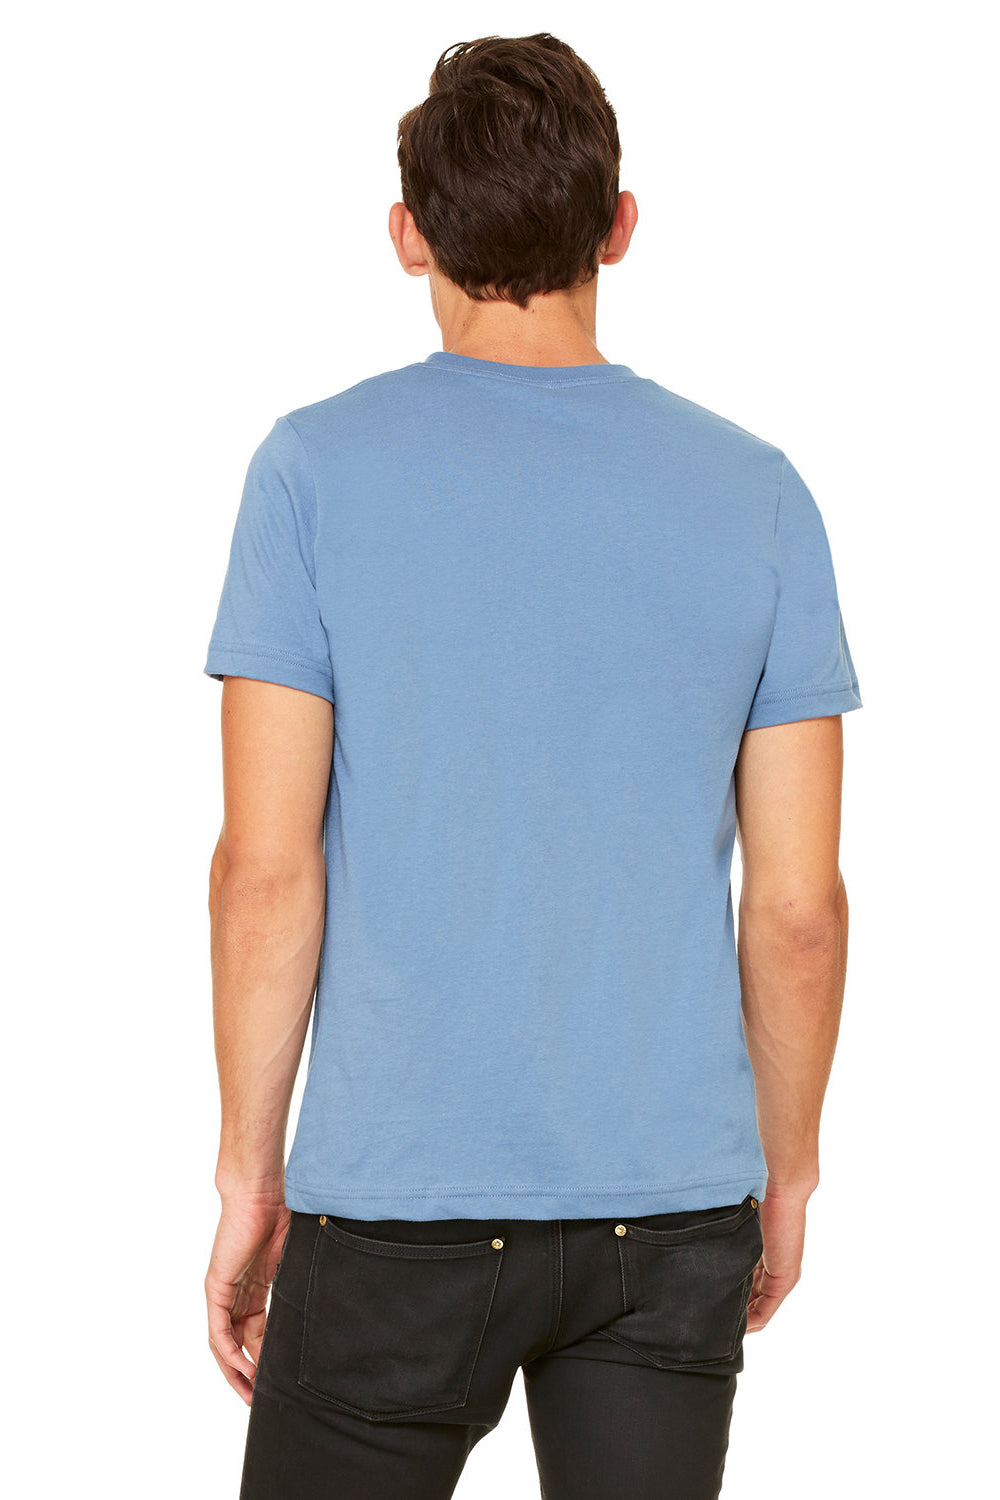 Bella + Canvas BC3005/3005/3655C Mens Jersey Short Sleeve V-Neck T-Shirt Steel Blue Model Back